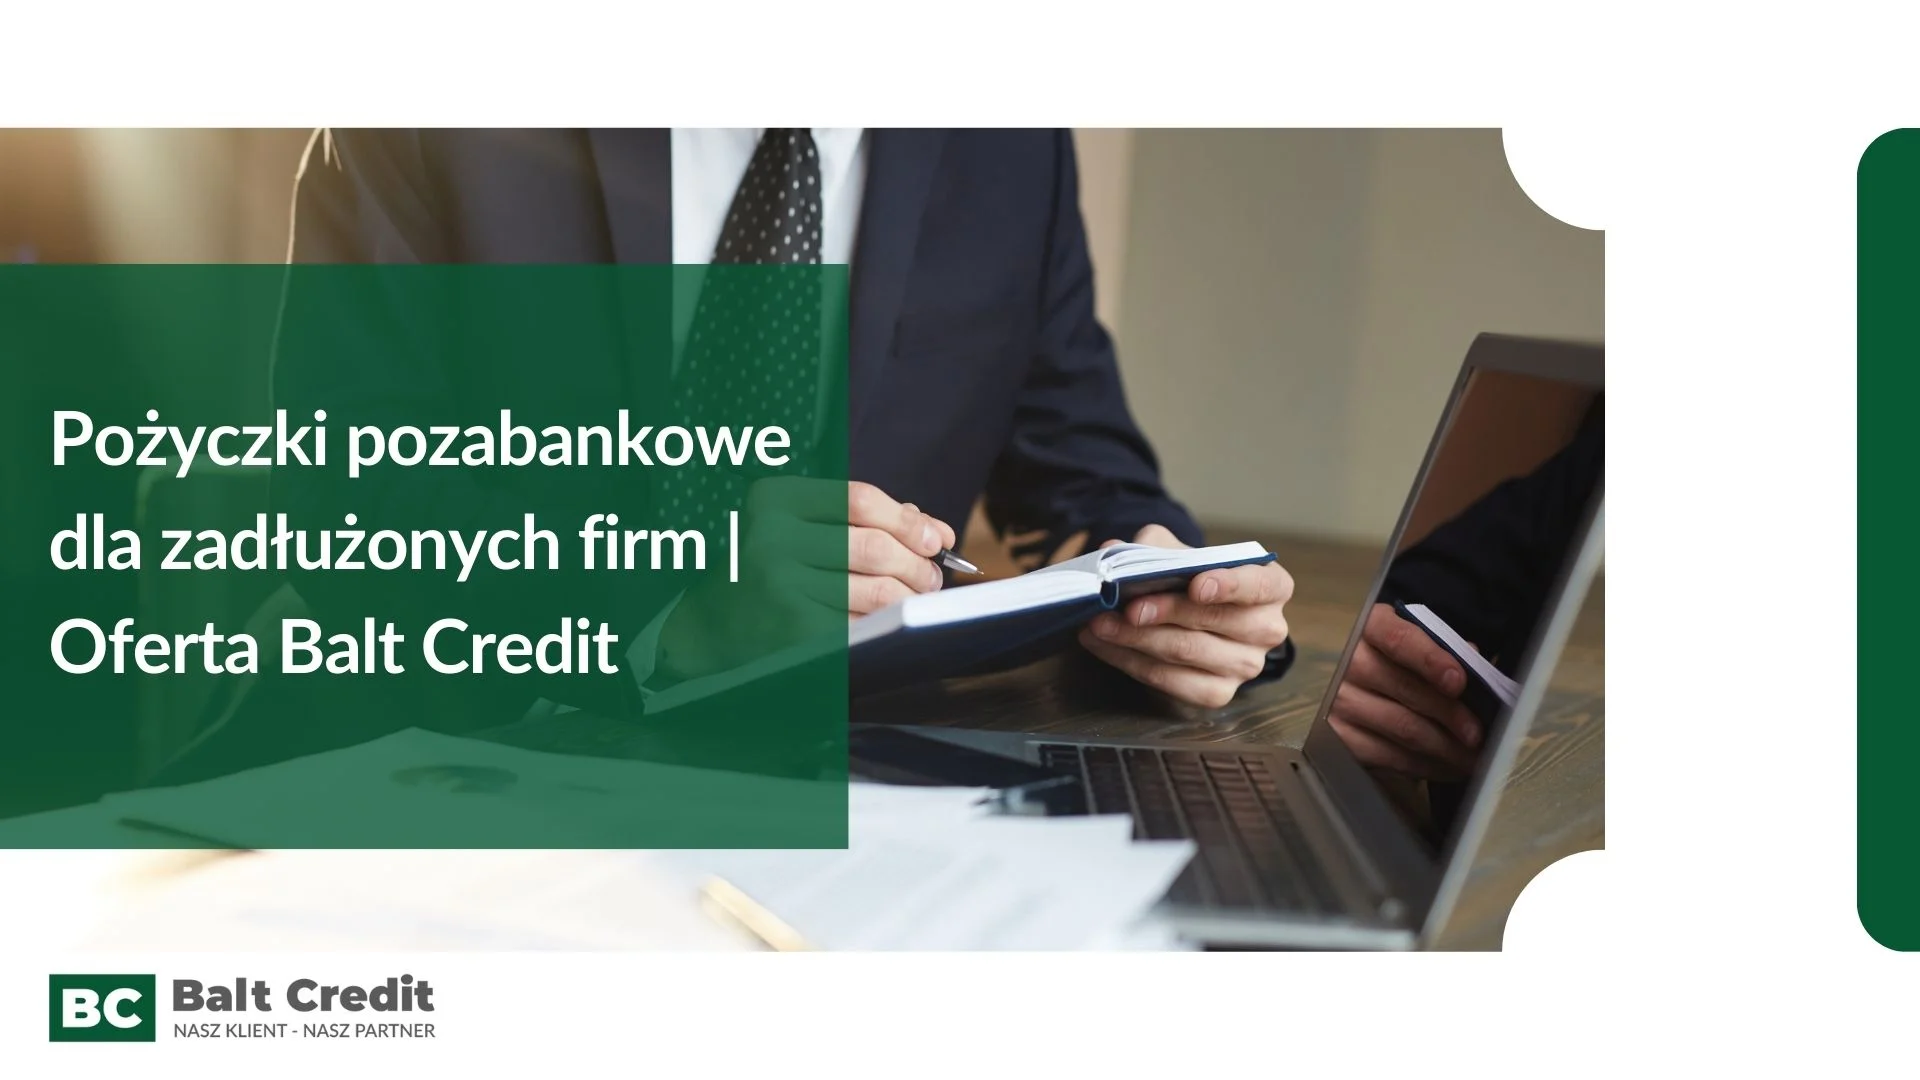 Pożyczki pozabankowe dla zadłużonych firm - oferta Balt Credit